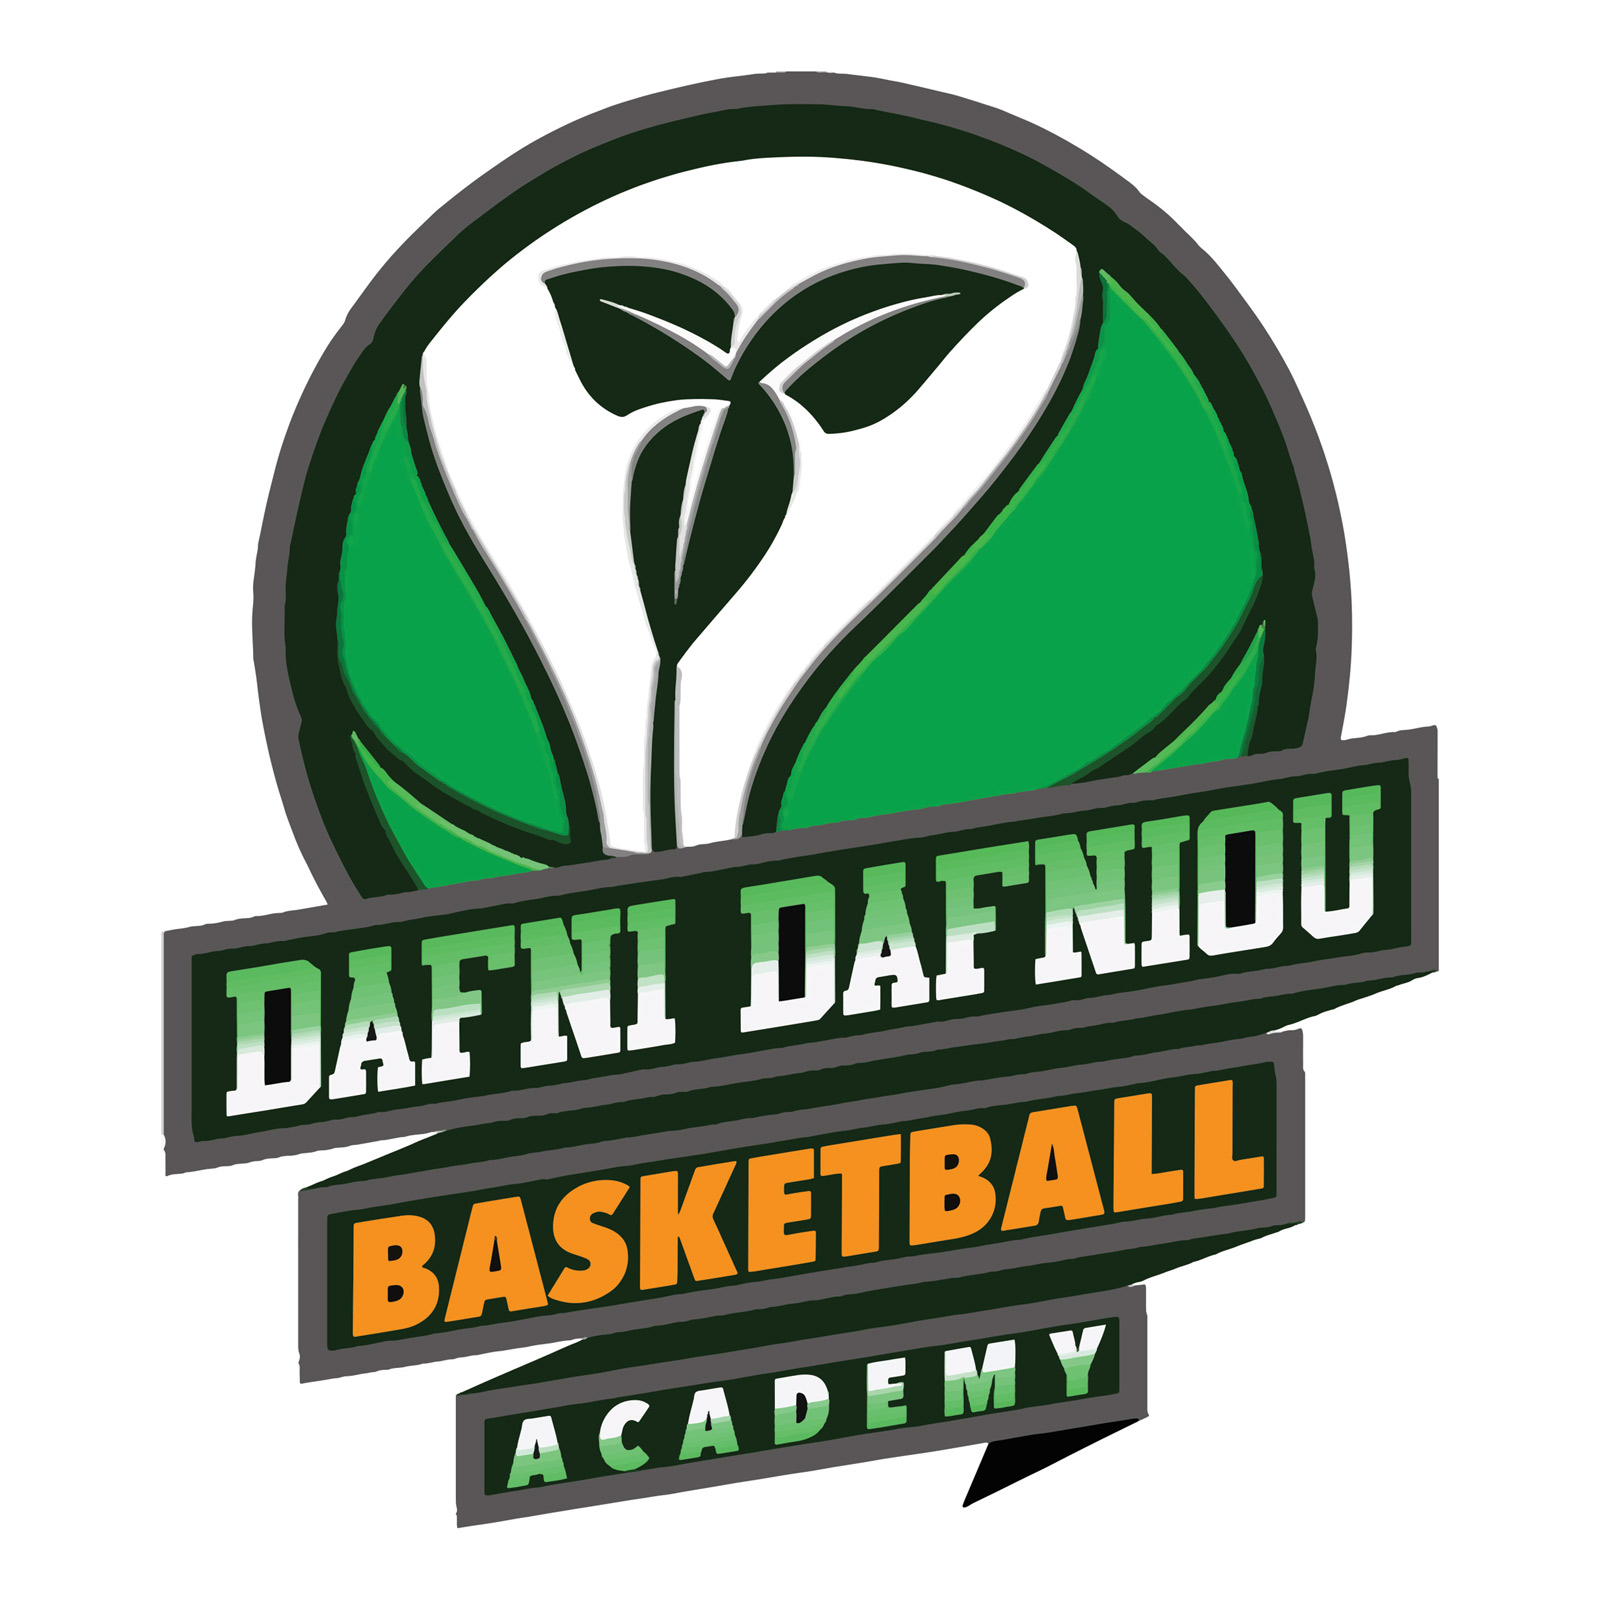 Dafni dafniou basketball academy